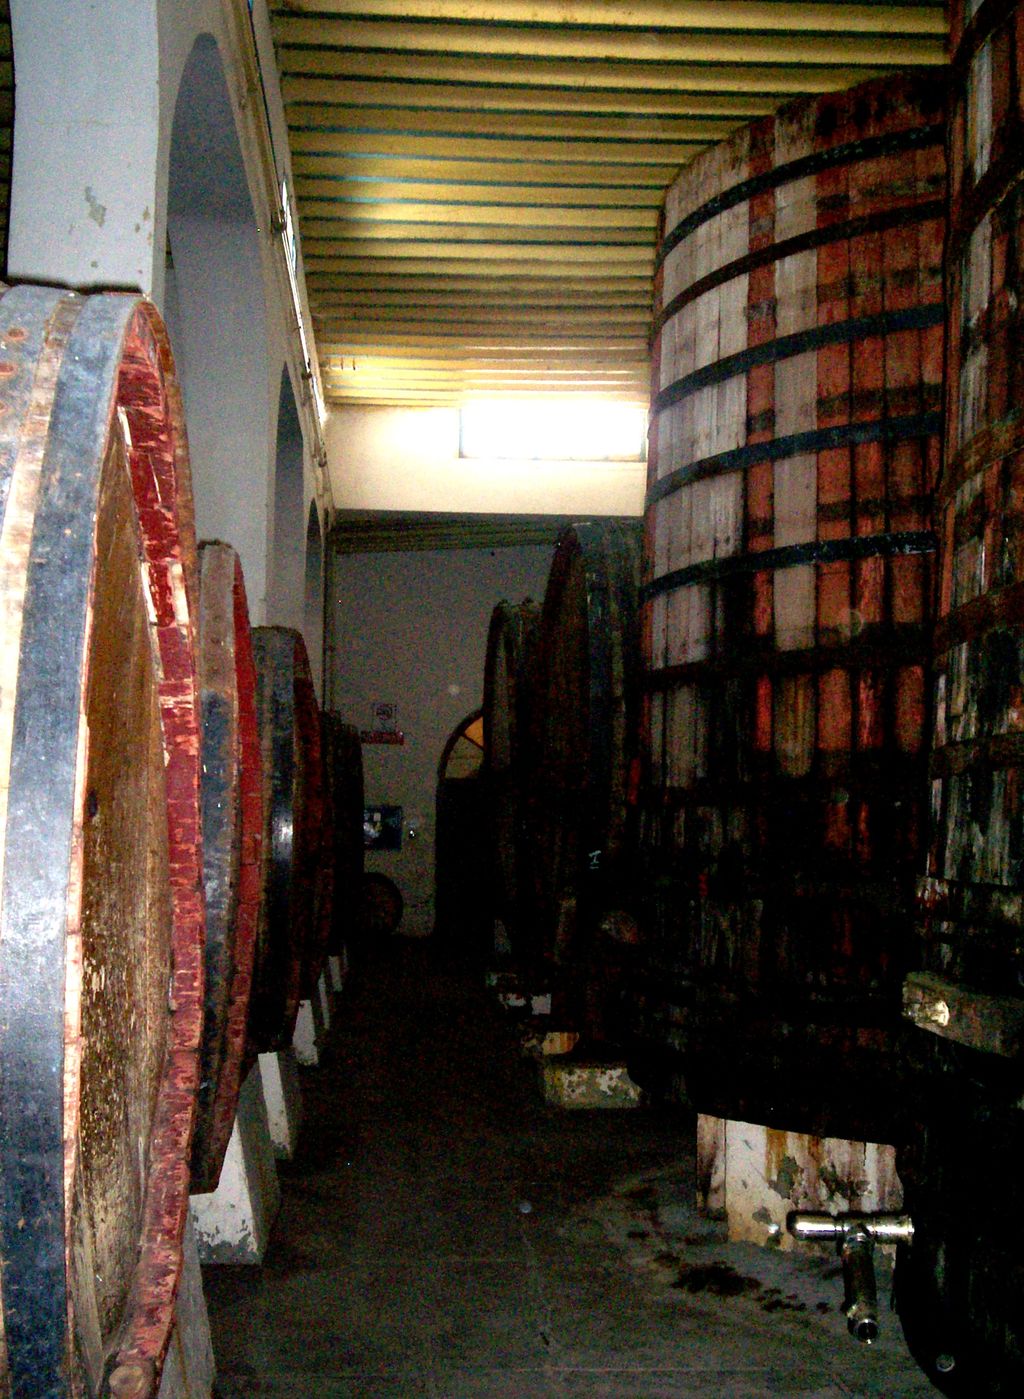 La cultura del vino del País de La Laguna